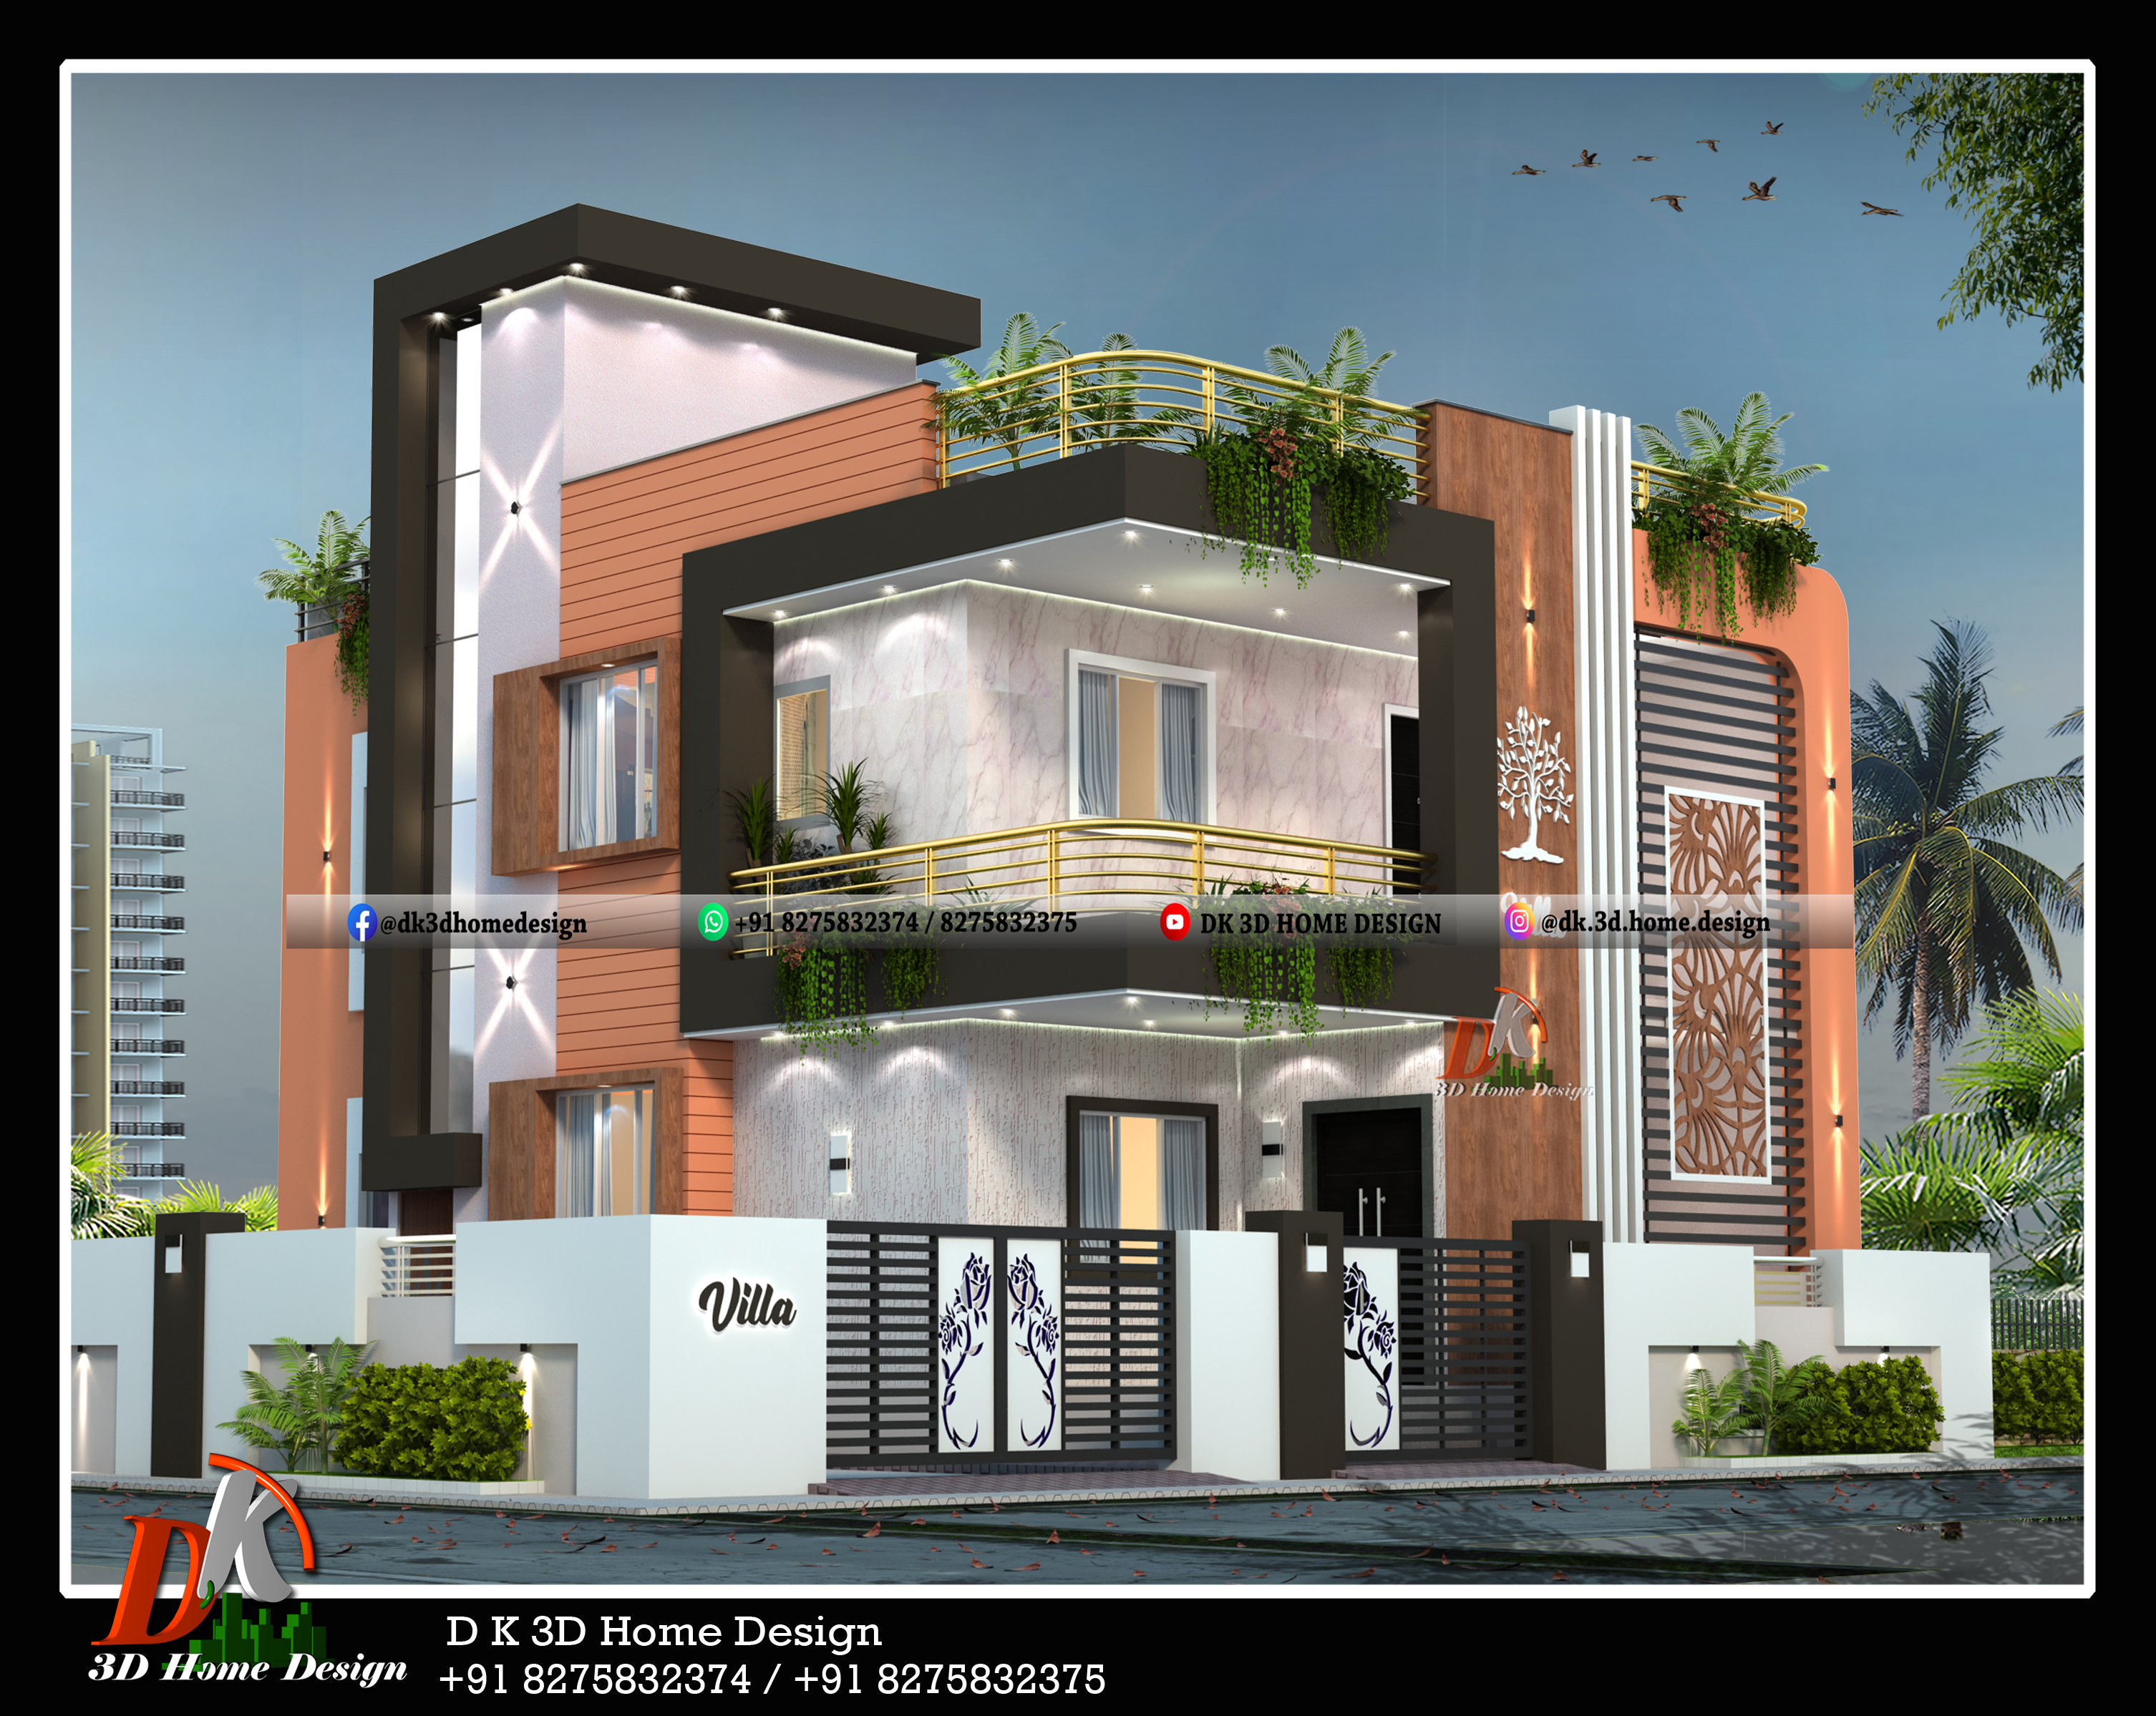 home front elevation design